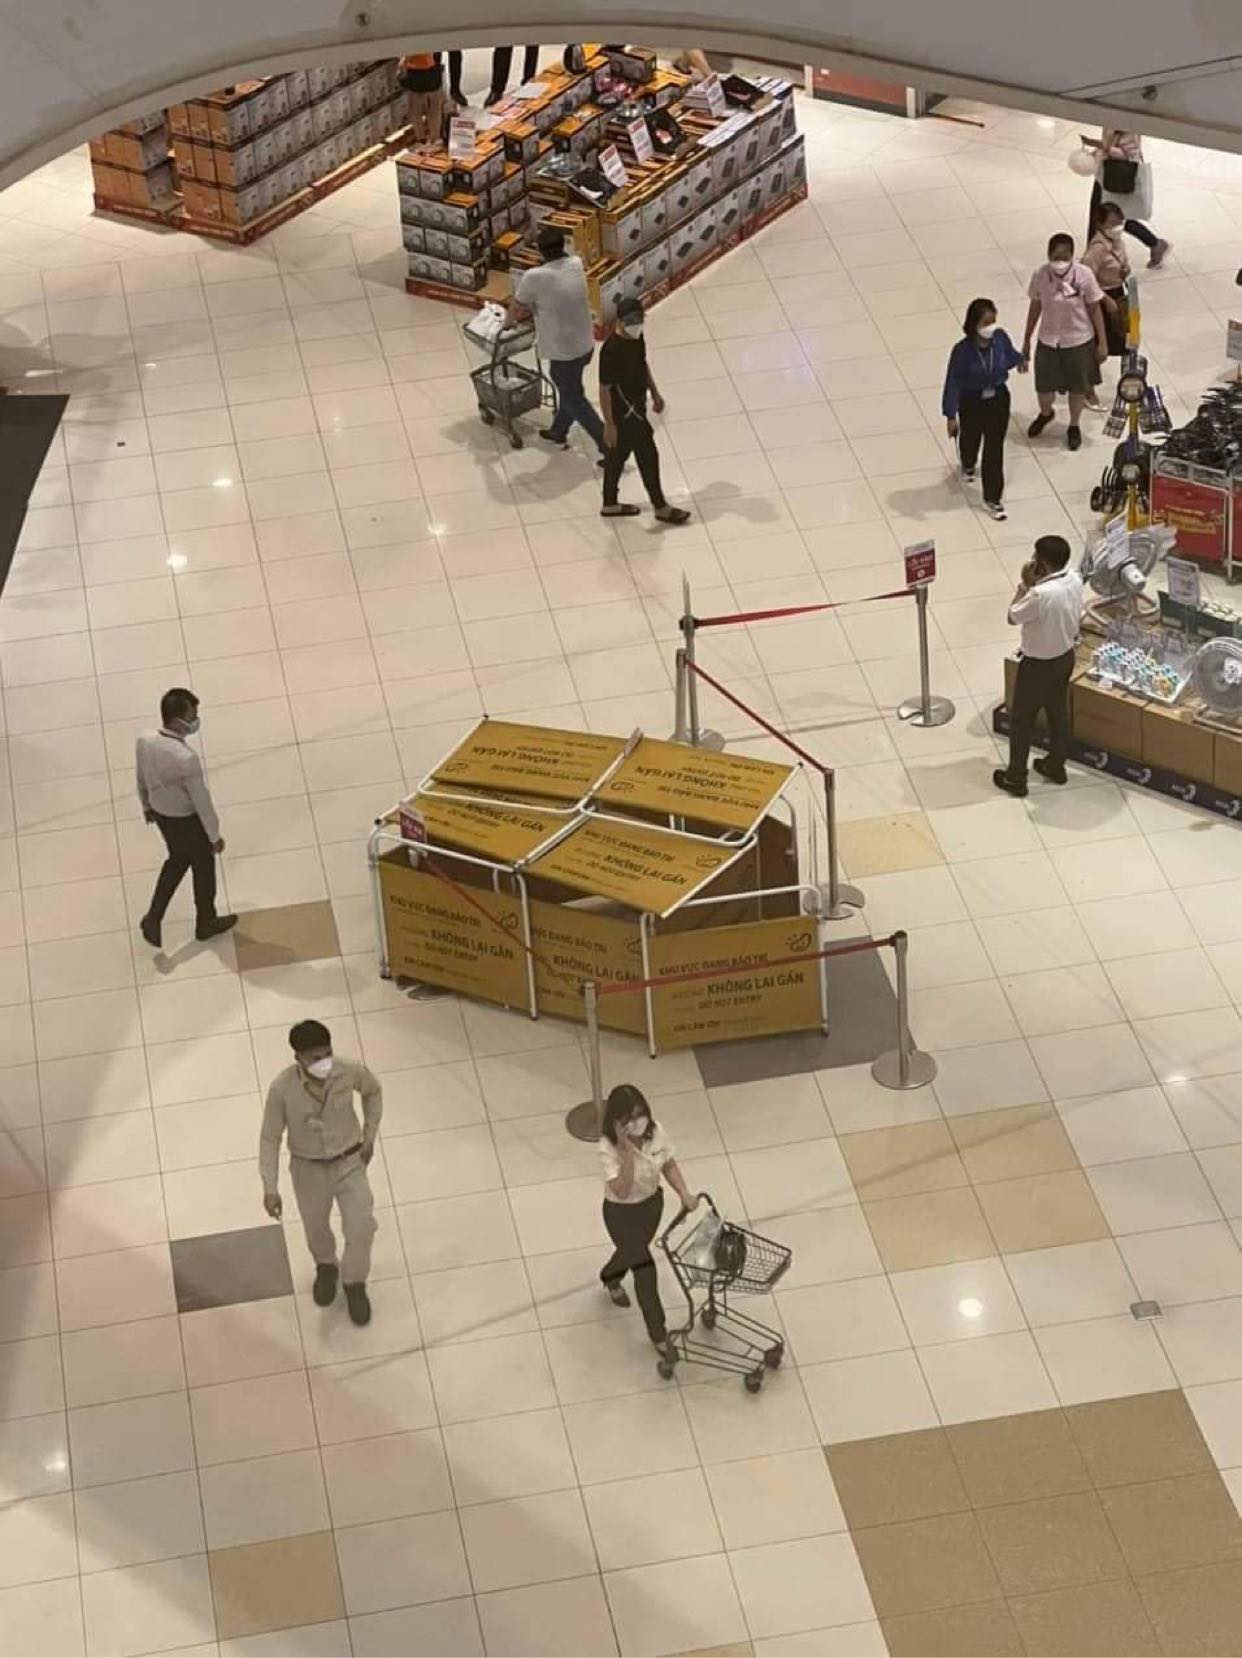 Khu vực nơi xảy sự việc trong siêu thị Aeon Mall Bình Dương